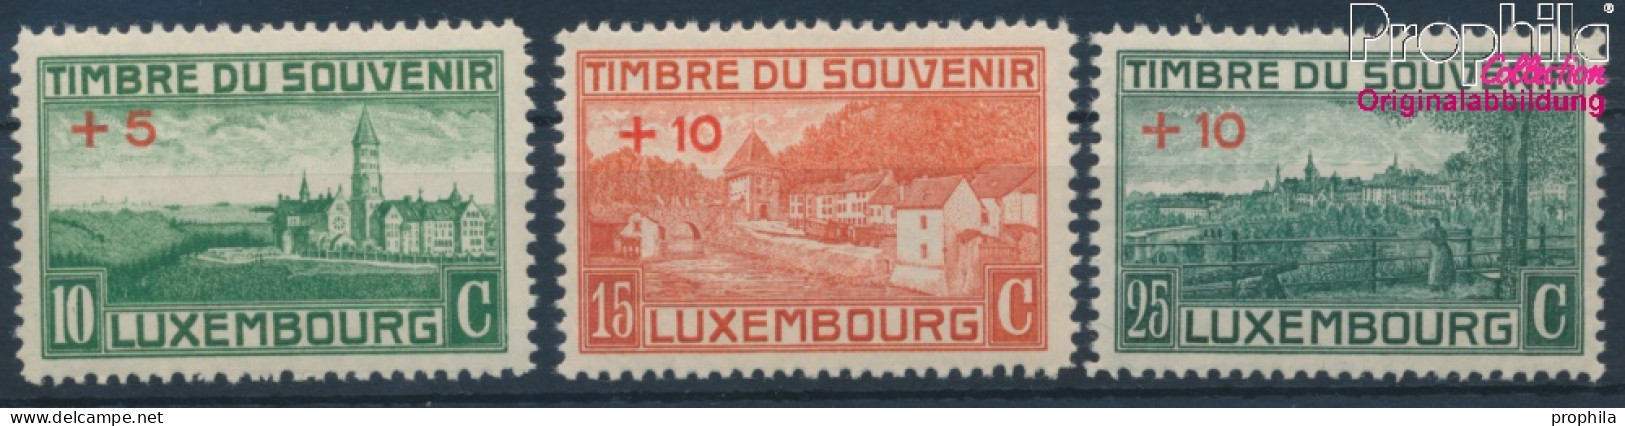 Luxemburg 137-139 (kompl.Ausg.) Postfrisch 1921 Kriegerdenkmal (10363335 - Ungebraucht